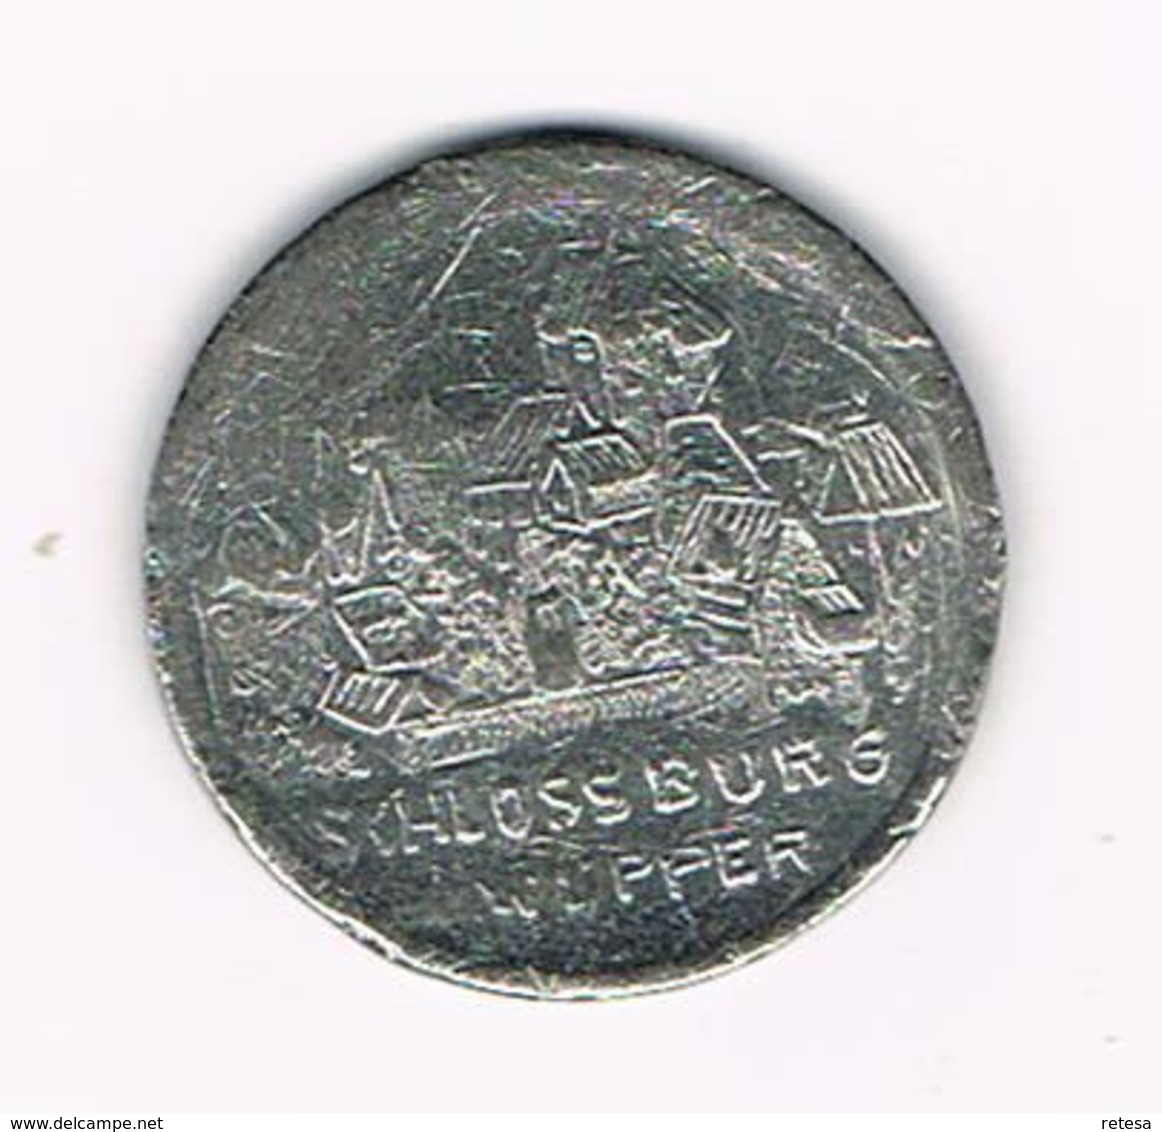 //  PENNING  ENGELBERT II - SCHLOSSBURG A.d. WUPPER - Souvenirmunten (elongated Coins)